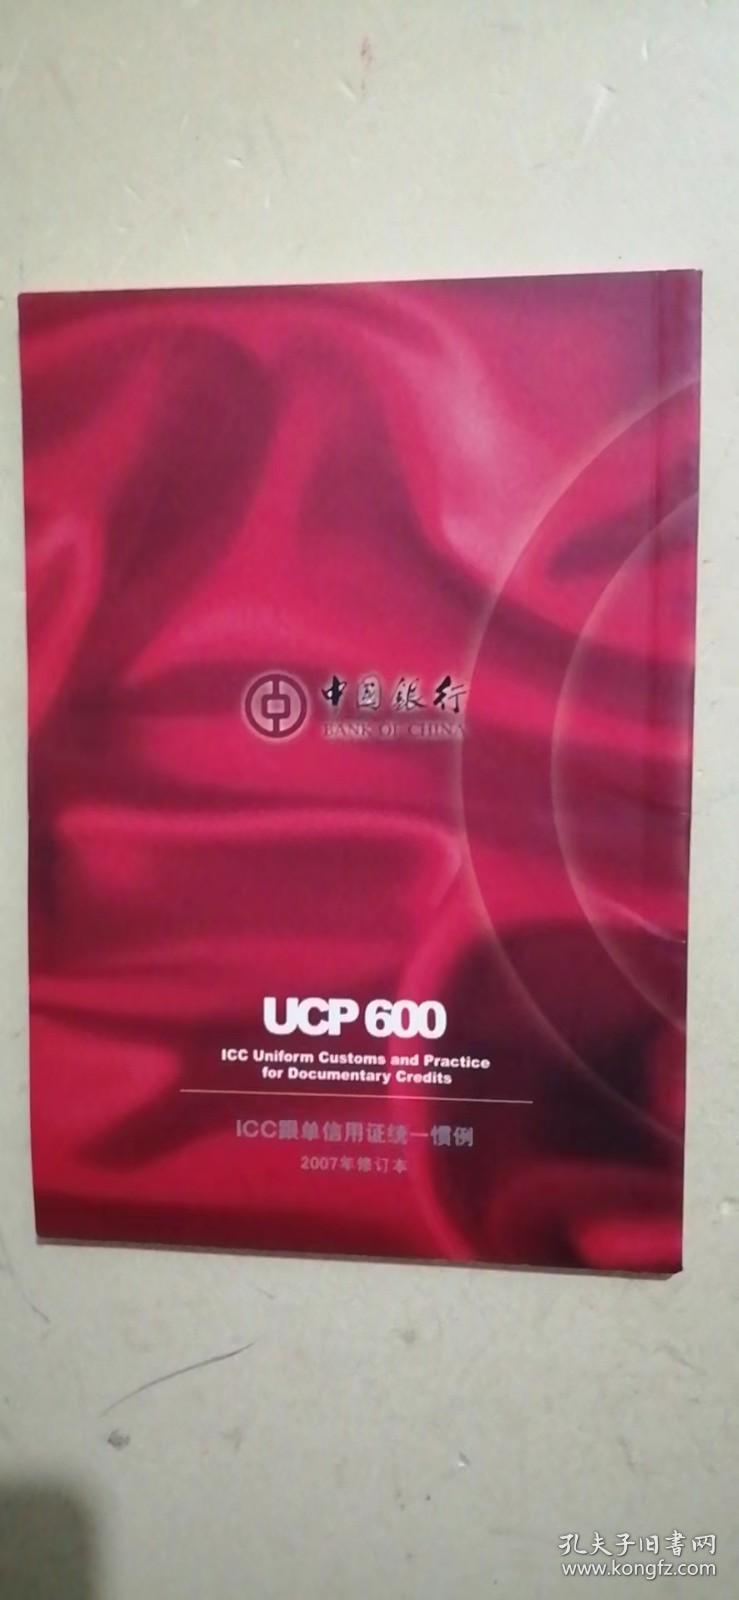 品读UCP600：跟单信用证统一惯例